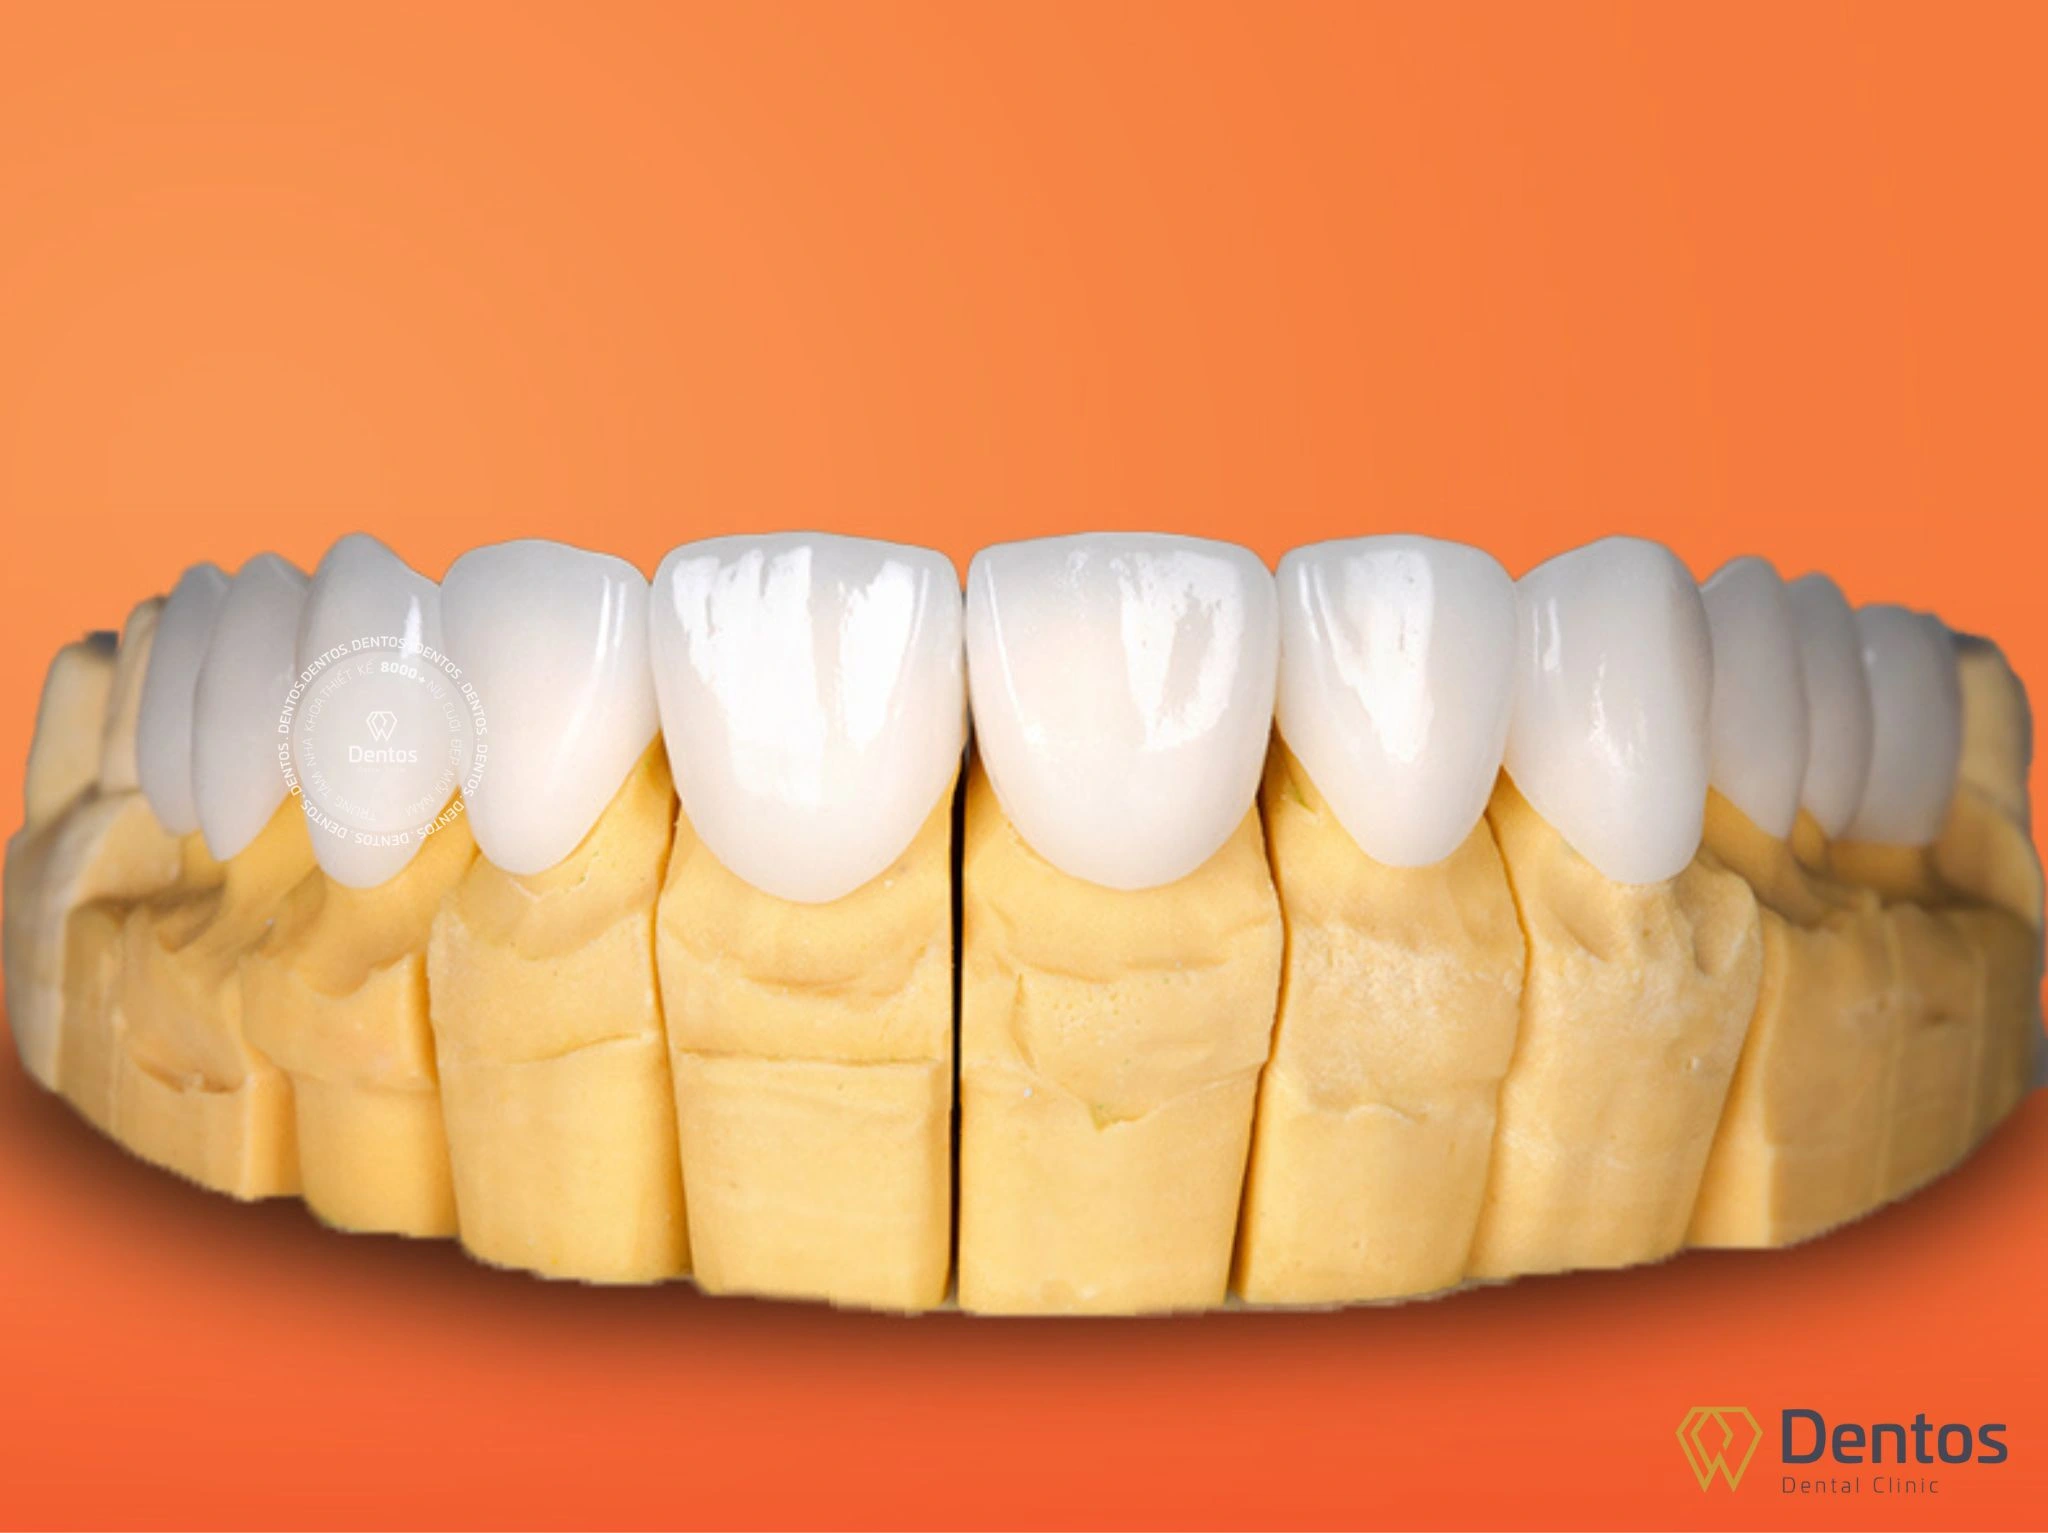 Nha khoa Dentos nhập khẩu chính hãng duy nhất 1 sản phẩm răng sứ DDBio